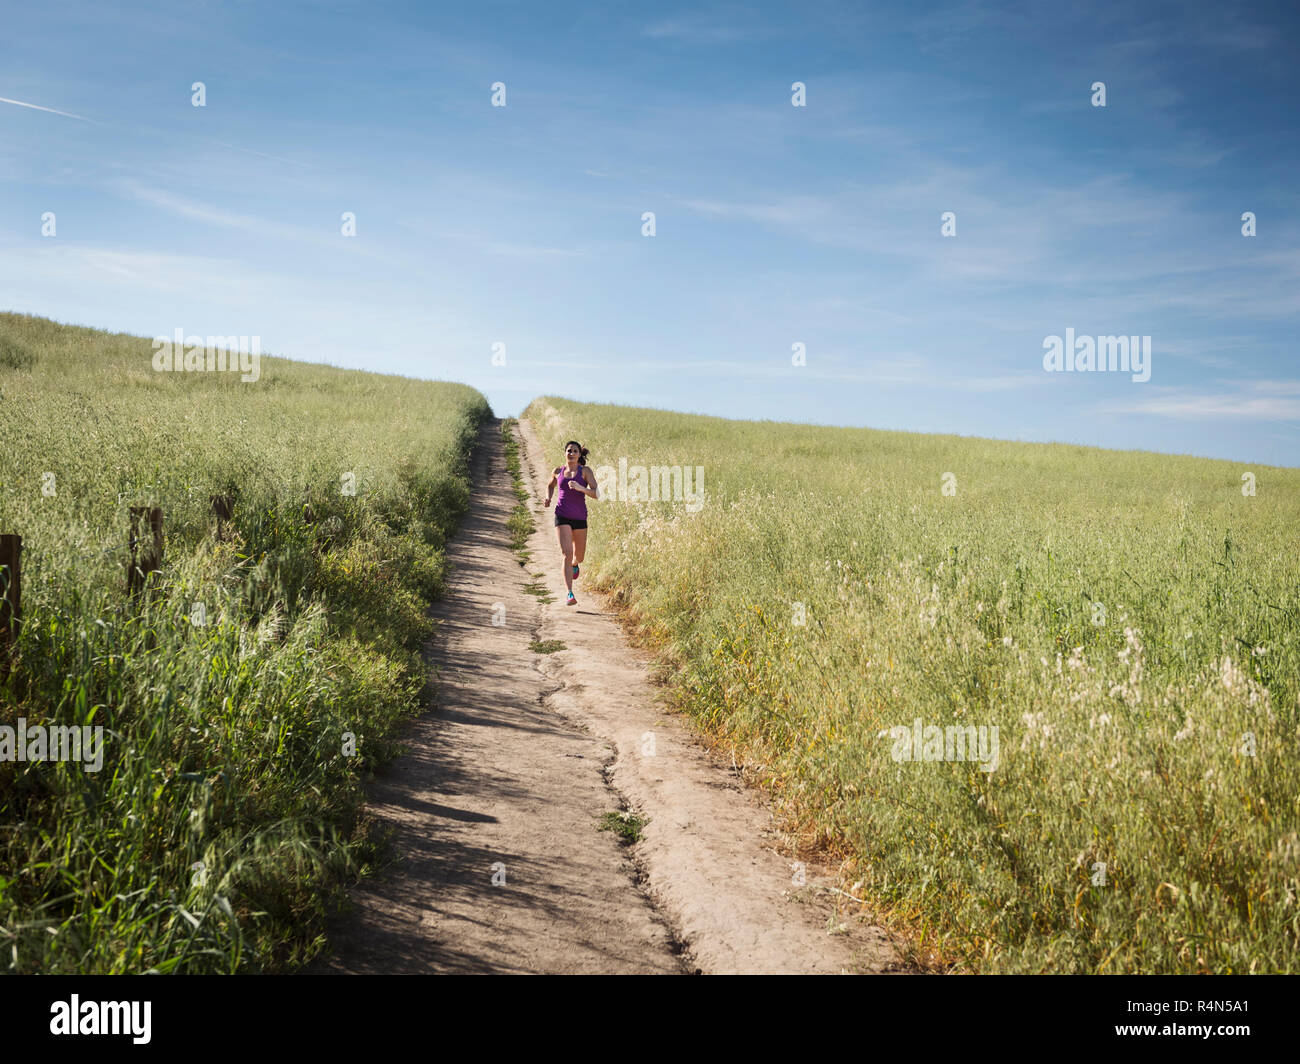 Mitte der erwachsenen Frau joggen auf dem Weg durch das Feld Stockfoto